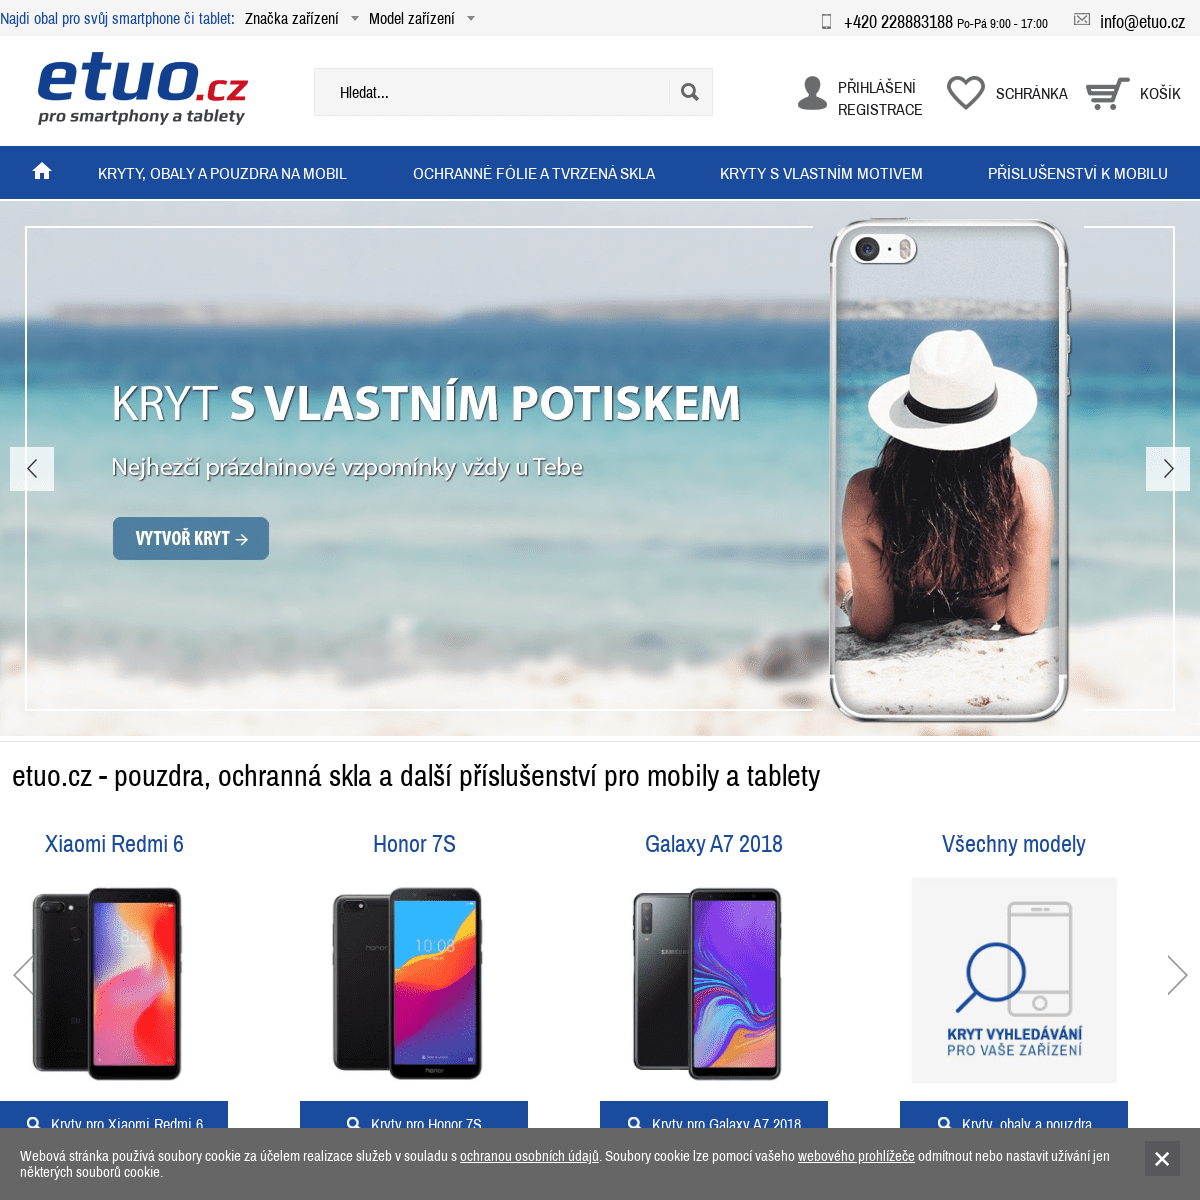 Příslušenství pro mobilní telefony a tablety. Důvěryhodný eshop | etuo.cz